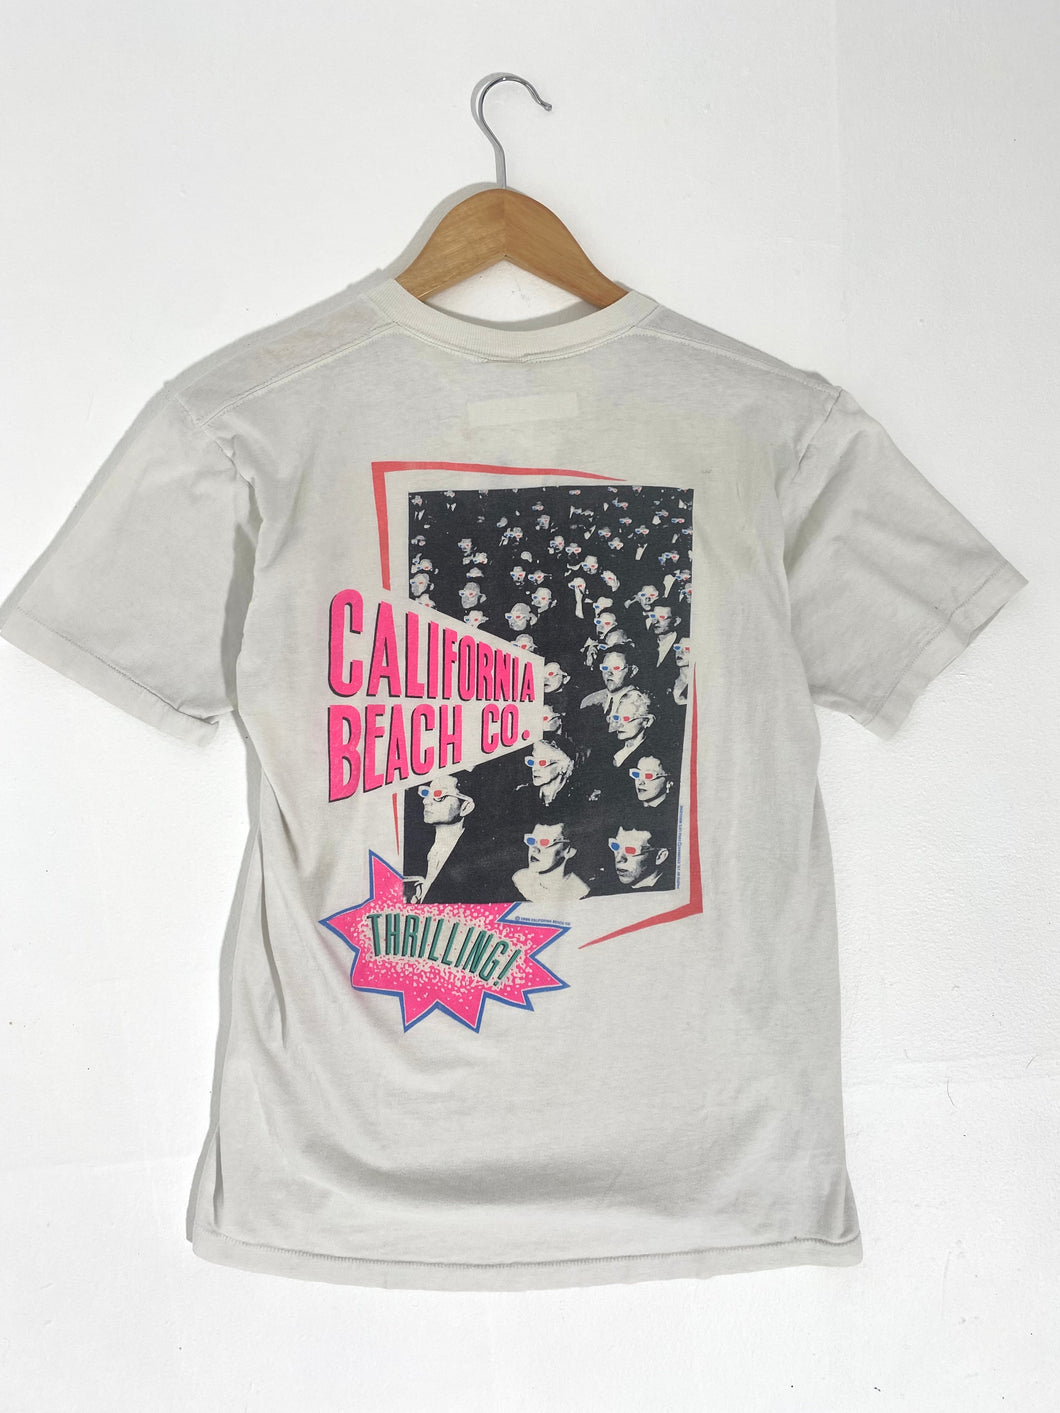 Vintage 1990's California Beach Co. T-Shirt Sz. M